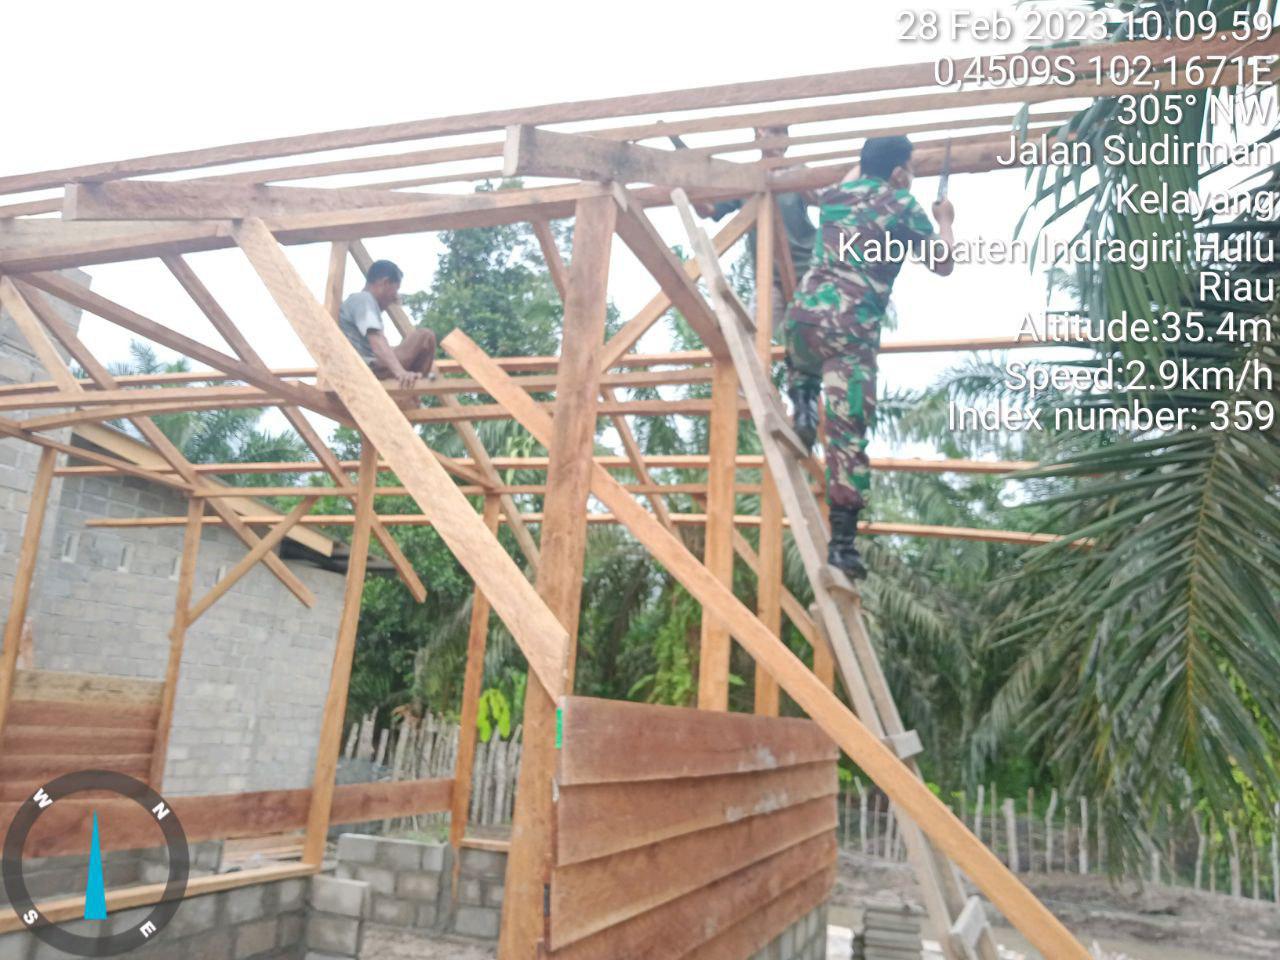 Babinsa Kopda Iif Ariyadi Bantu Malik Yang Sedang Membuat Rumah di Desa Bongkal Malang